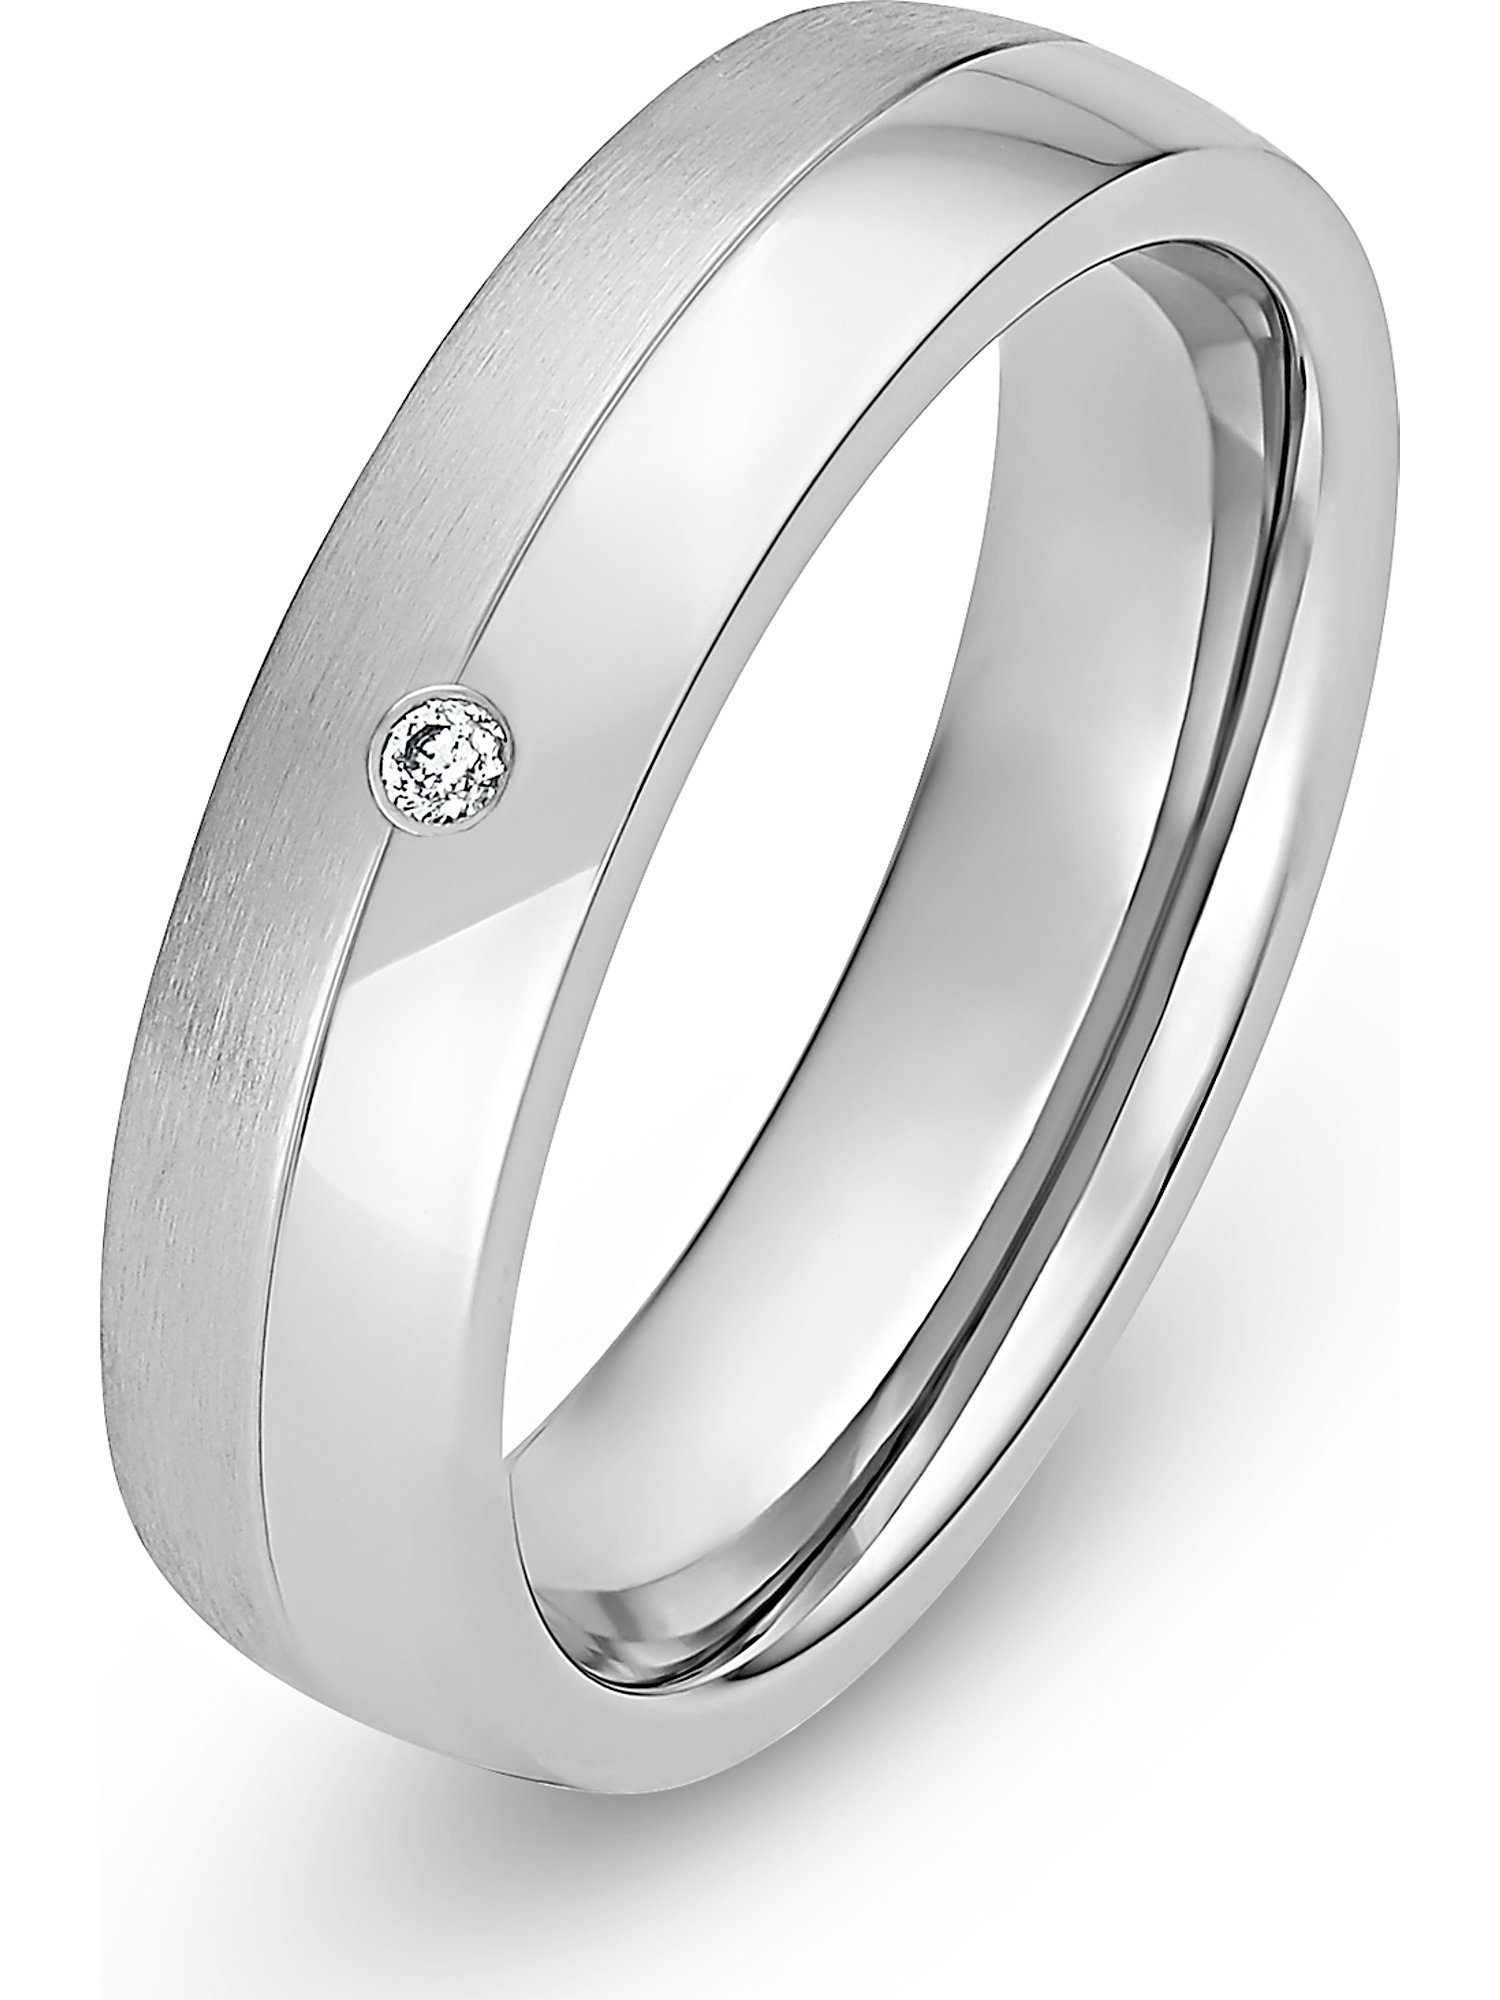 Edelstahl Ring Silber Silver IP Zirkonia dünn 3 mm elegant Damen Forever Love 